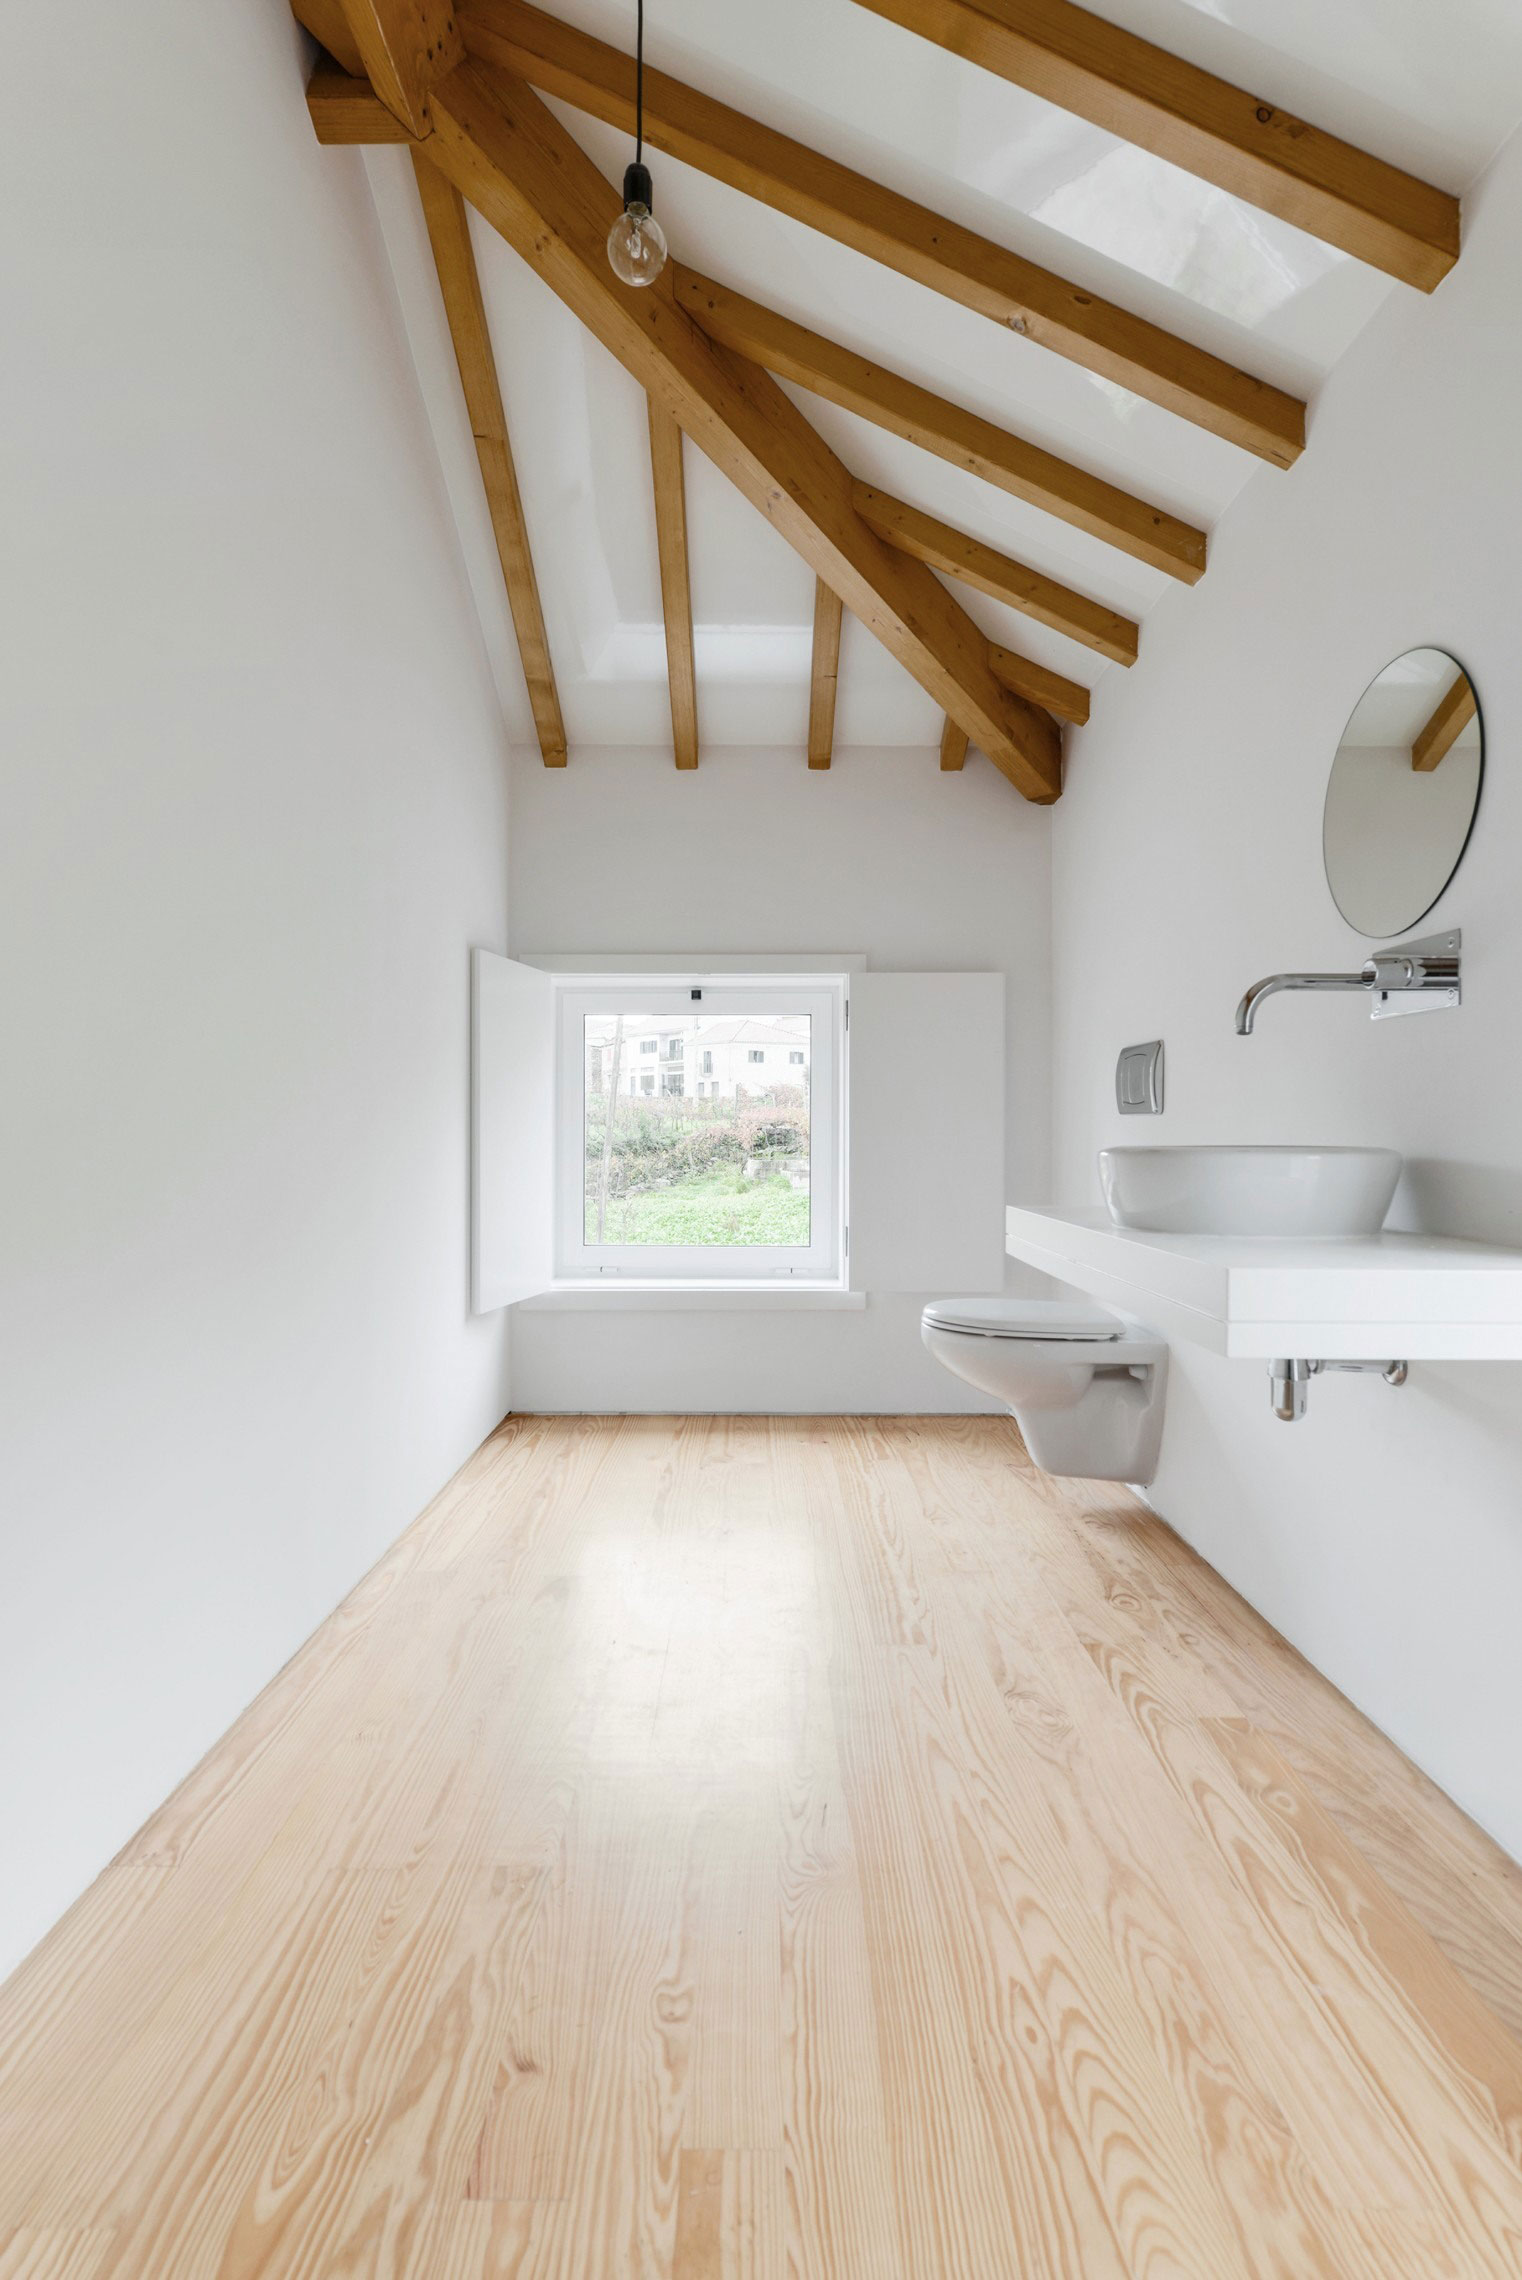 Дизайн интерьера ванной комнаты сельского дома